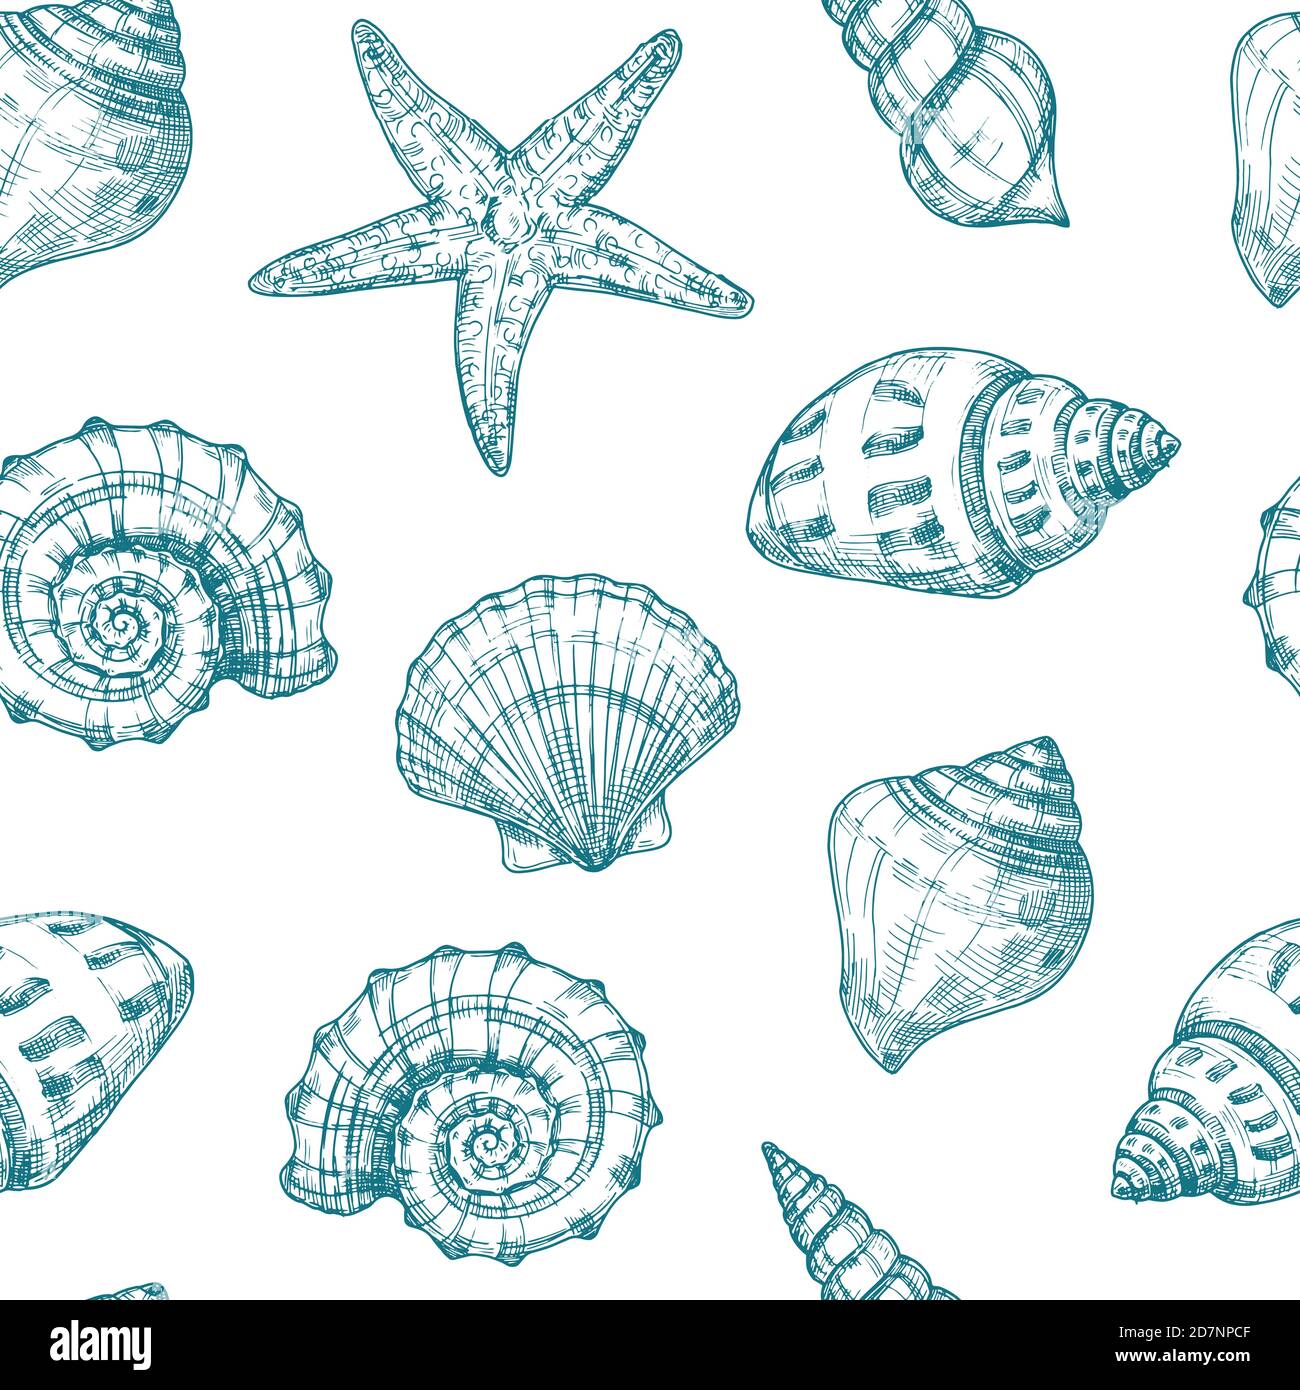 Seashells Nahtloses Muster. Meeresmuschel Sommer Ozean Textur. Seesterne wiederholen Vektor vintage Skizze Hintergrund. Abbildung der Muschel Zeichnung Hintergrund Stock Vektor